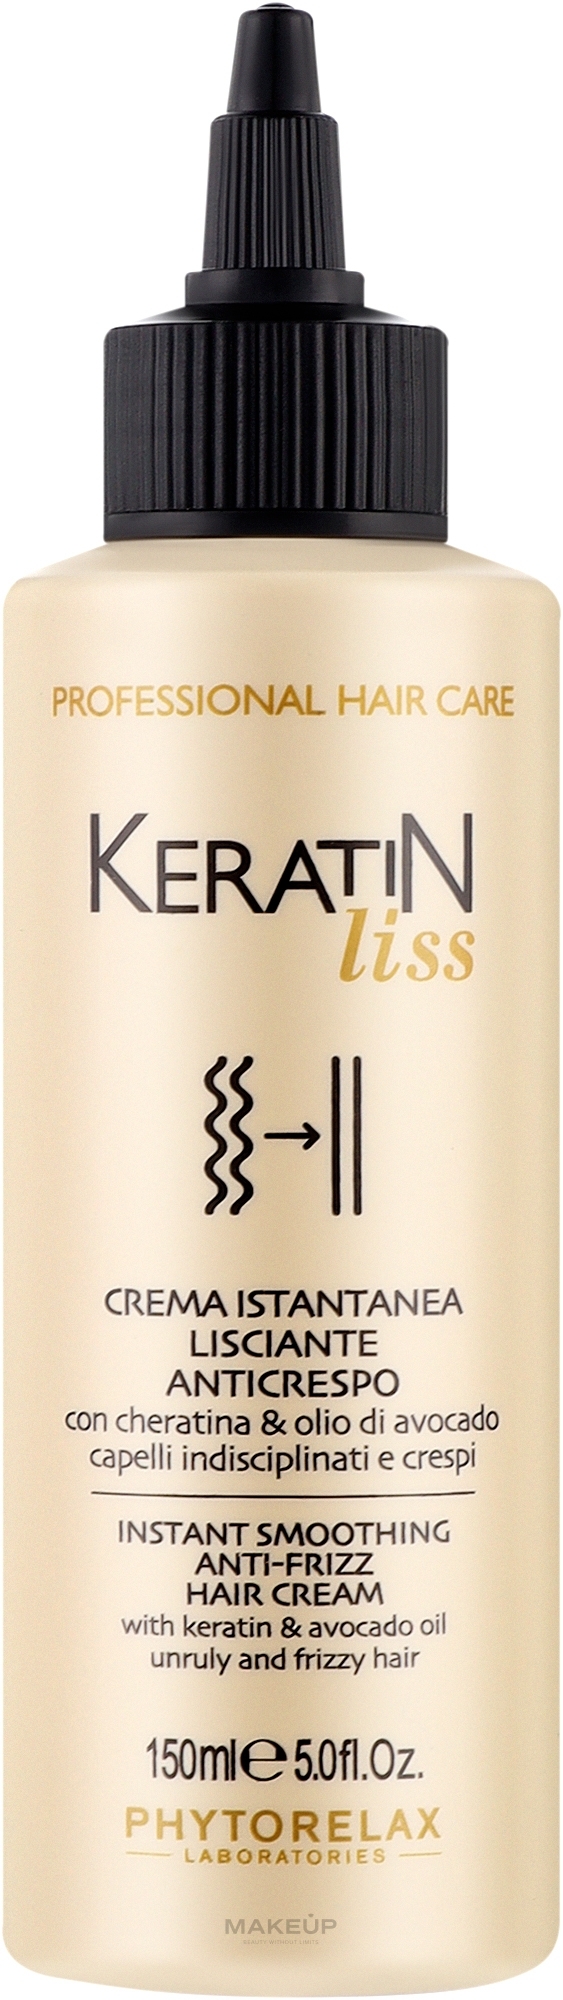 Крем для розгладження волосся - Phytorelax Laboratories Keratin Liss Instant Smoothing Anti-Frizz Hair Cream — фото 150ml